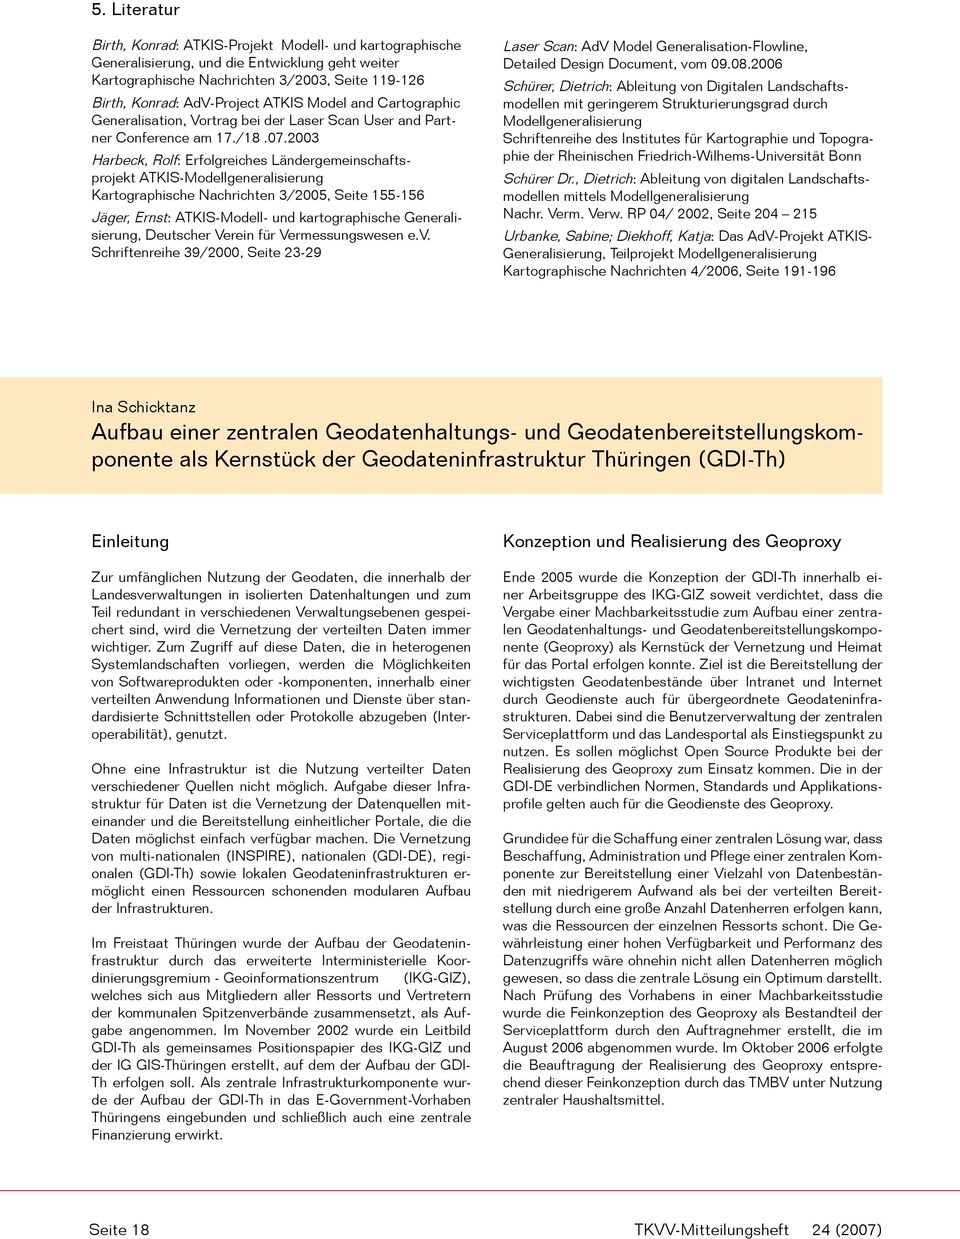 2003 Harbeck, Rolf: Erfolgreiches Ländergemeinschaftsprojekt ATKIS-Modellgeneralisierung Kartographische Nachrichten 3/2005, Seite 155-156 Jäger, Ernst: ATKIS-Modell- und kartographische